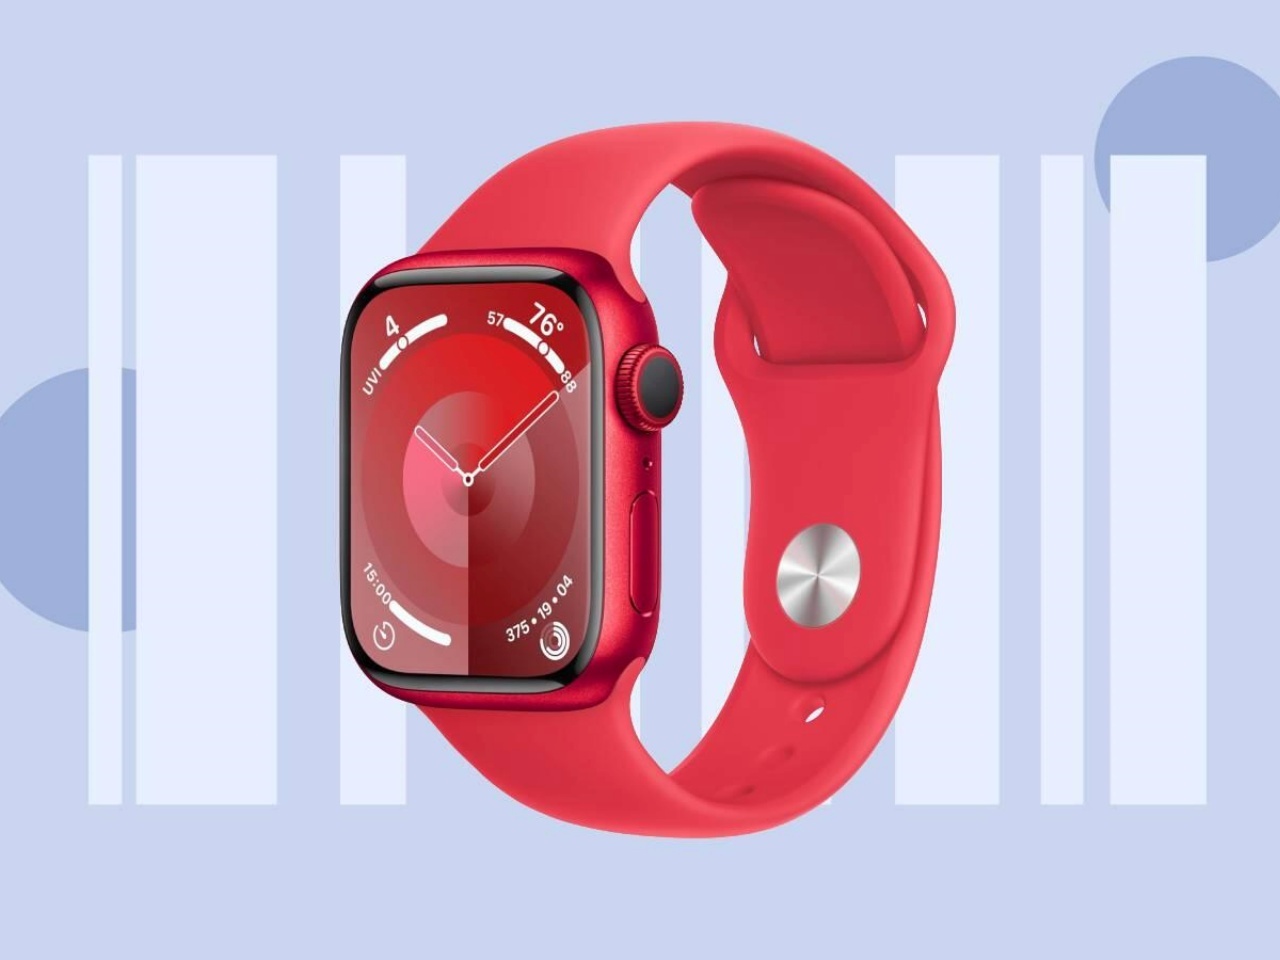 「Apple Watch X」のうわさまとめ--血圧上昇検知や磁気バンドなど ...